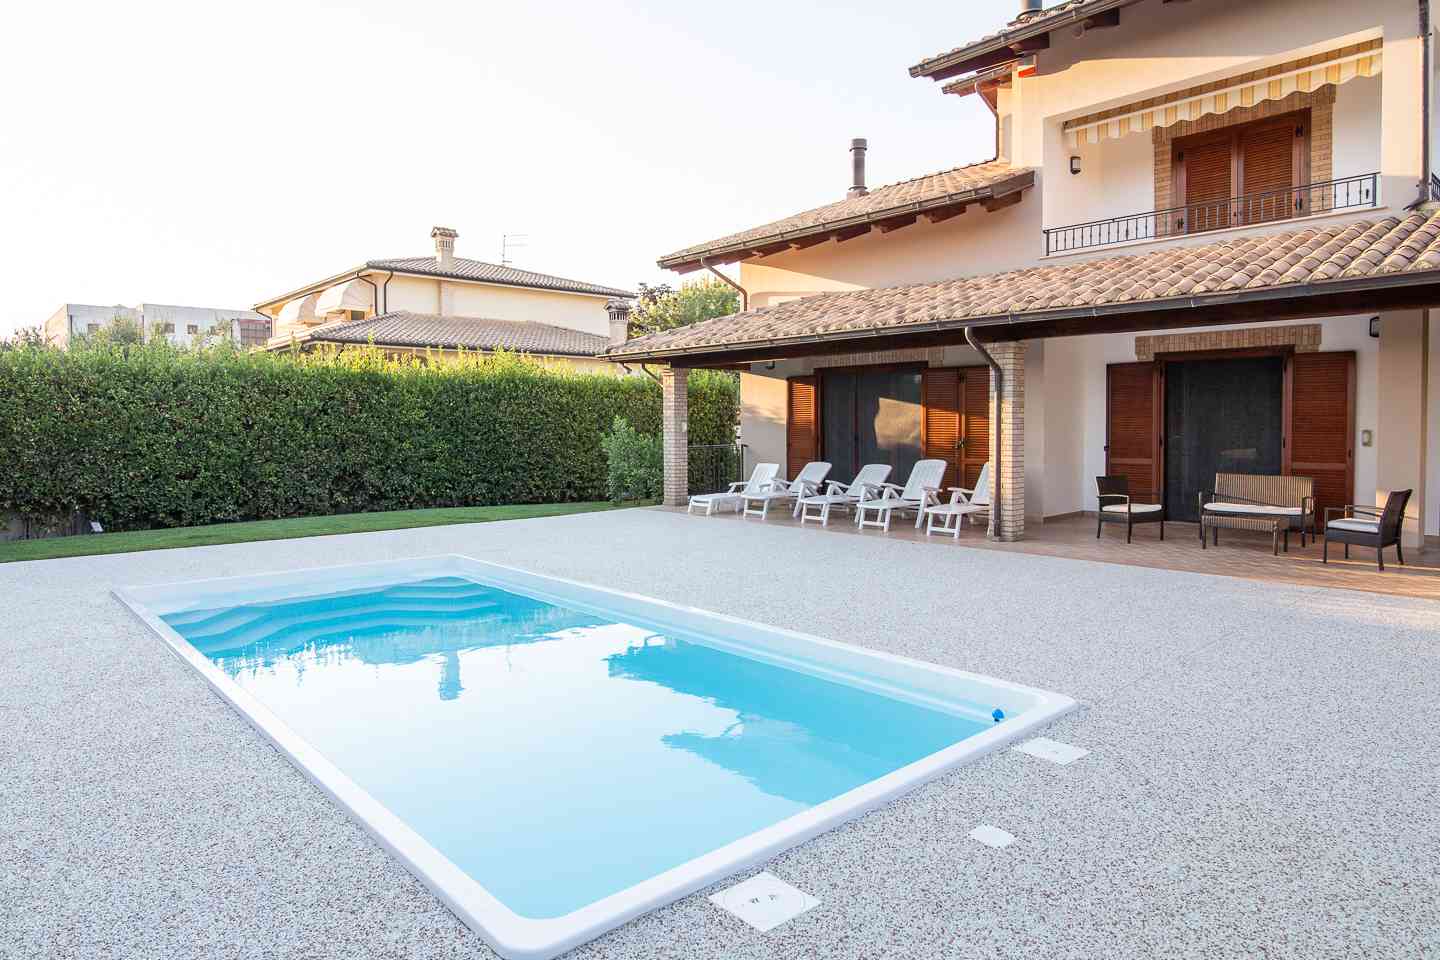 Semi-detached House Semi-detached House for sale Collecorvino (PE), Villa Pini - Collecorvino - EUR 574.653 420